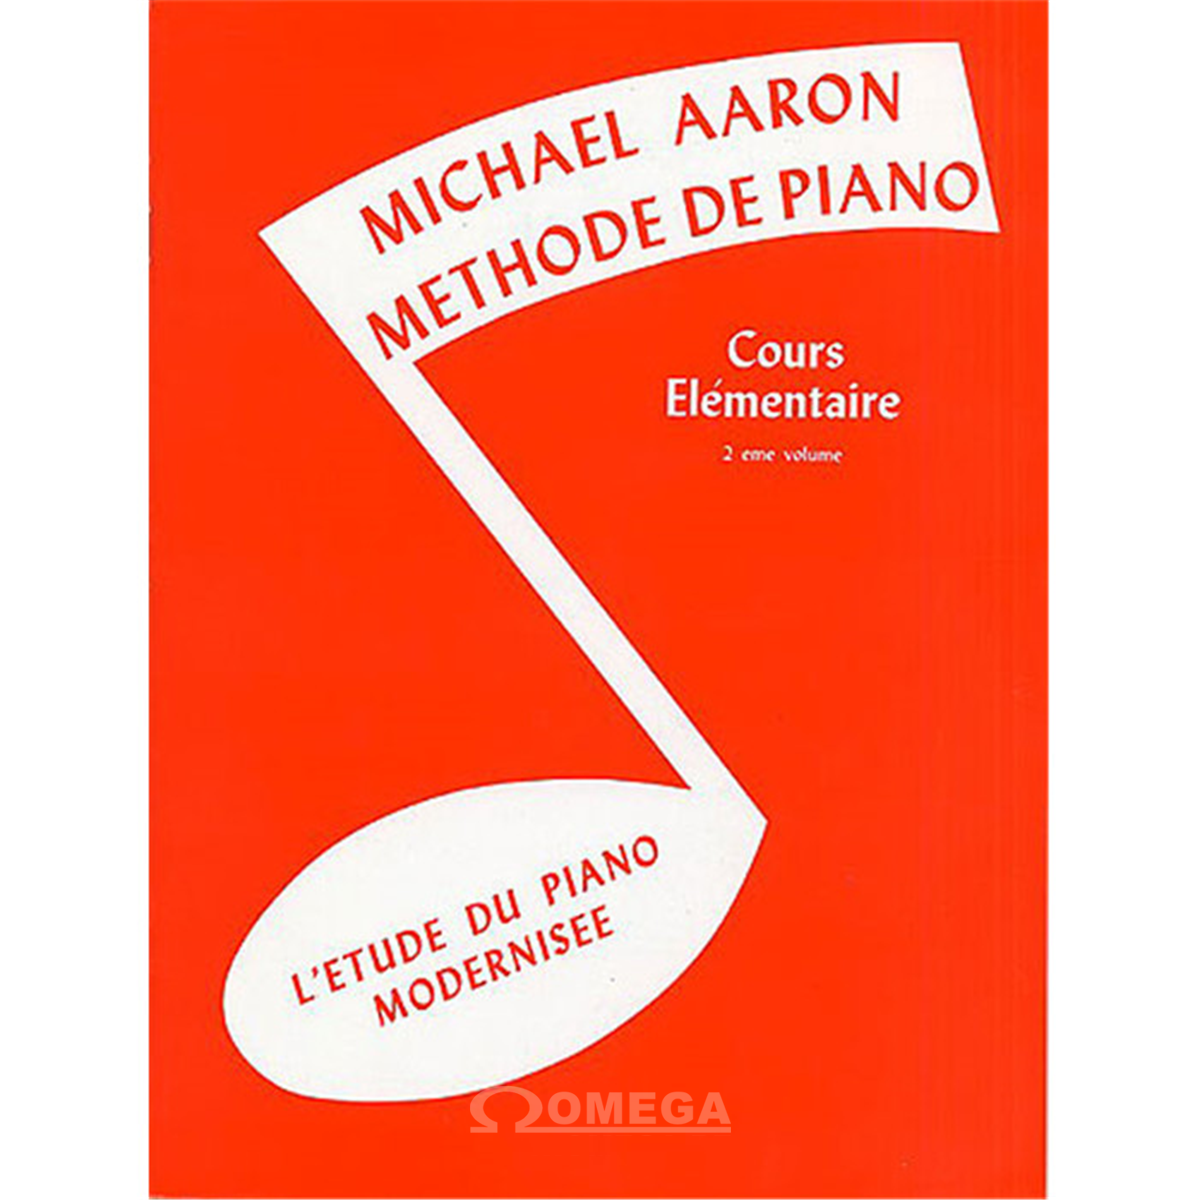 Omega Music  AARON Michel Méthode de Piano Cours Elémentaire Vol.2